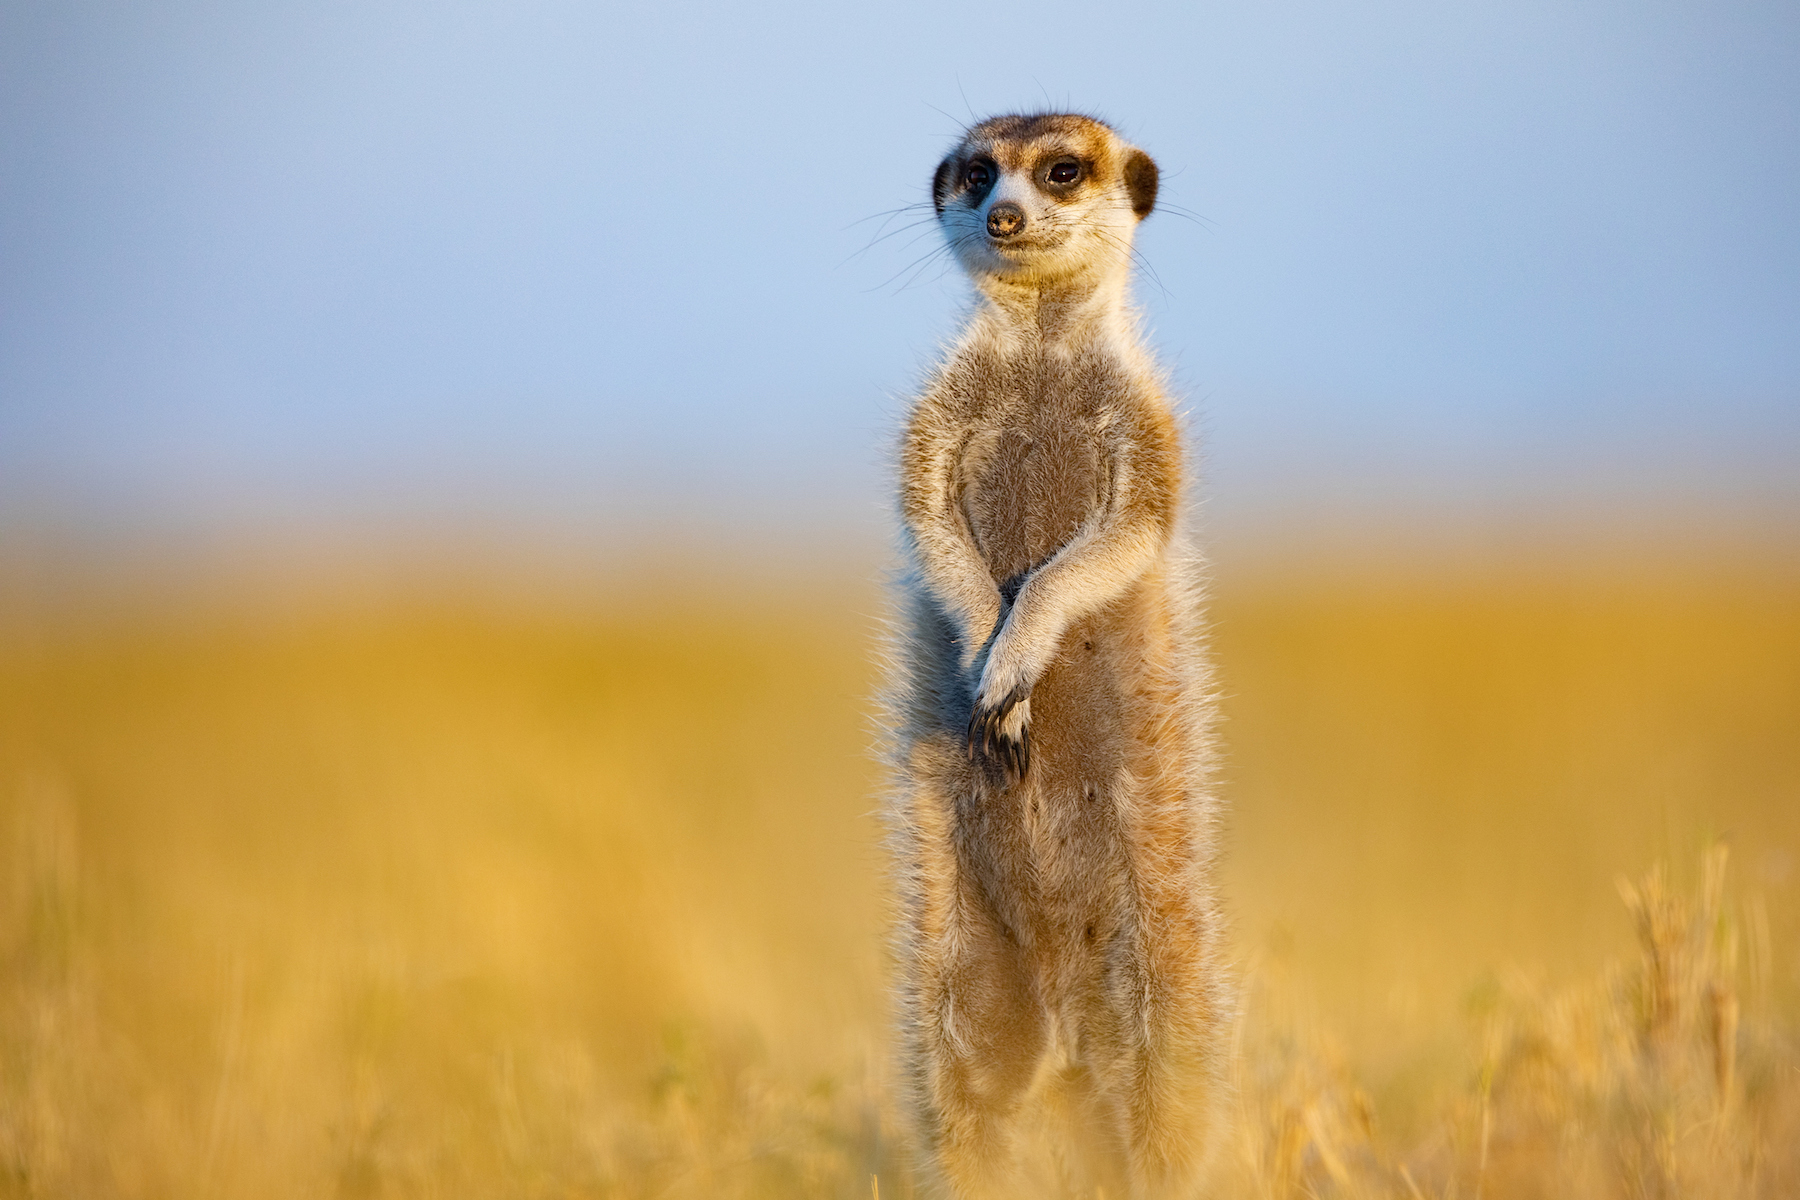 A beautiful meerkat watches over us in Botswana